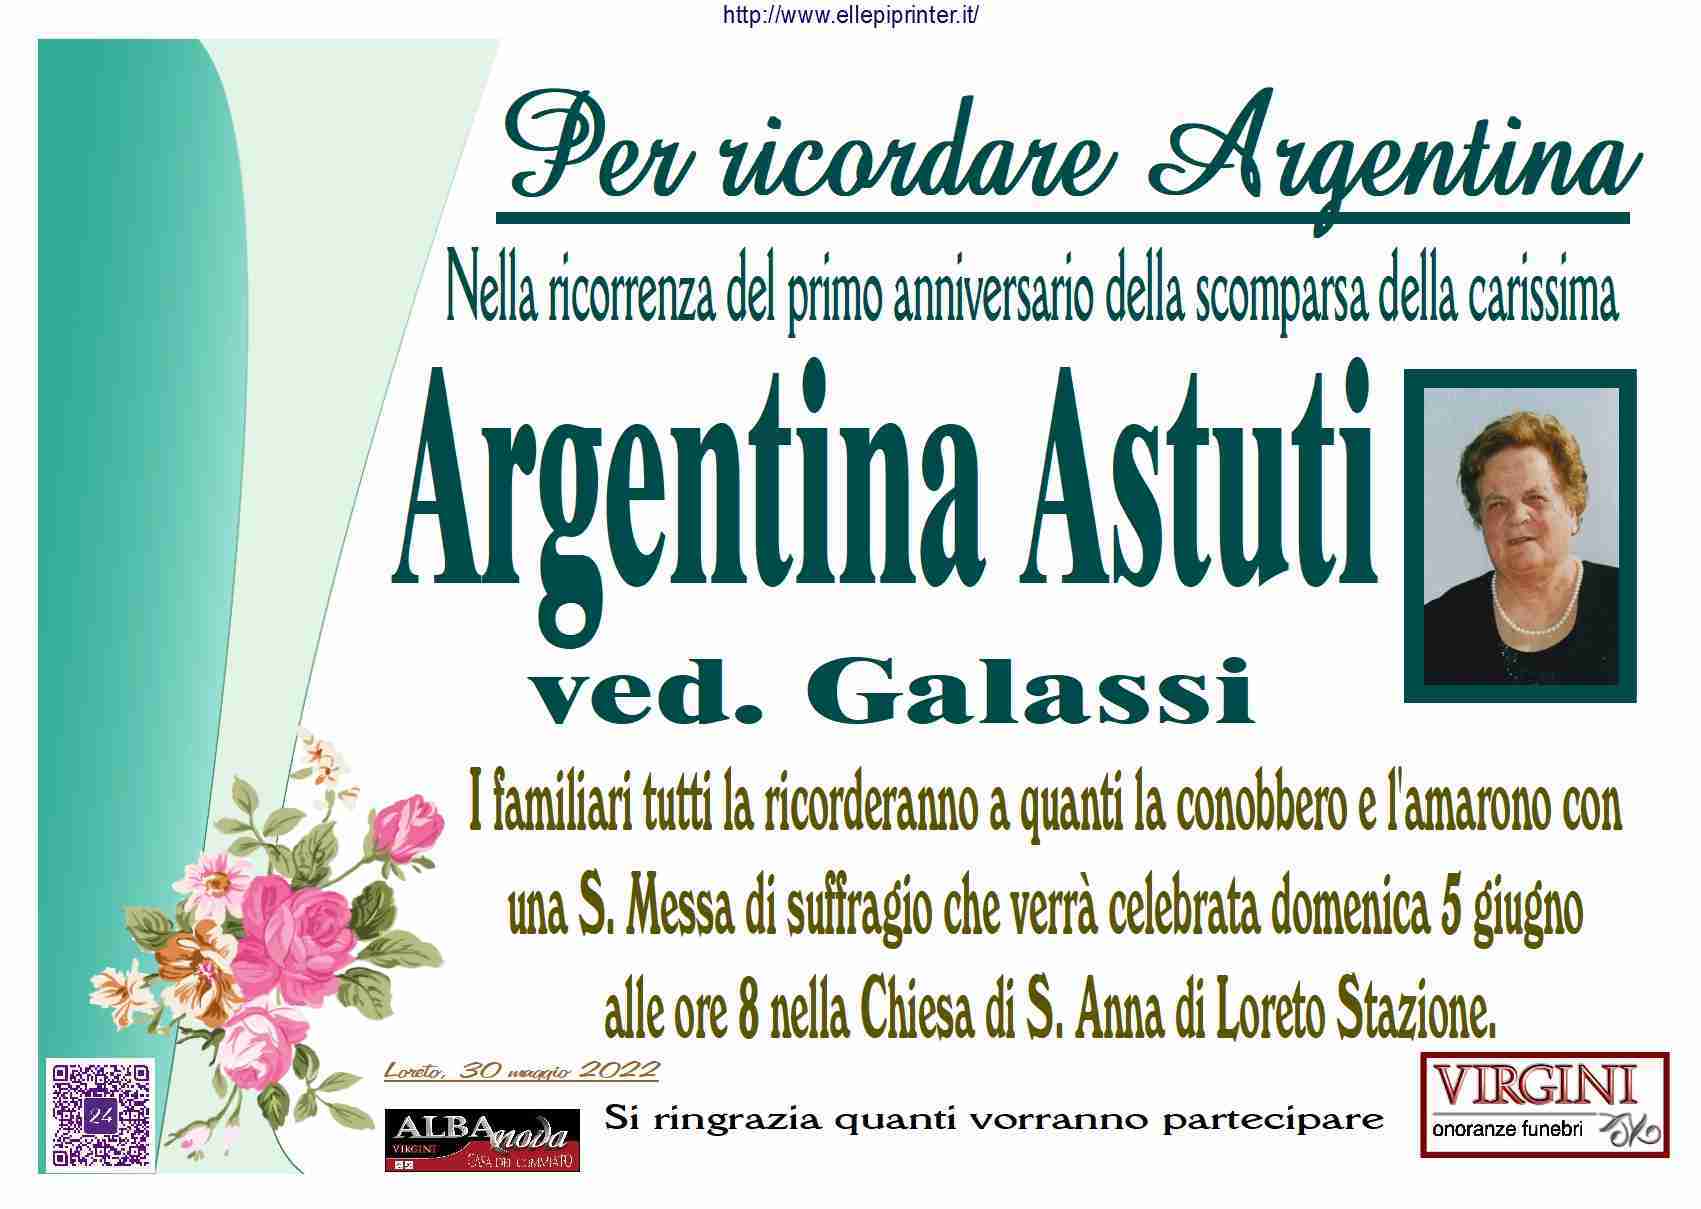 Argentina Astuti